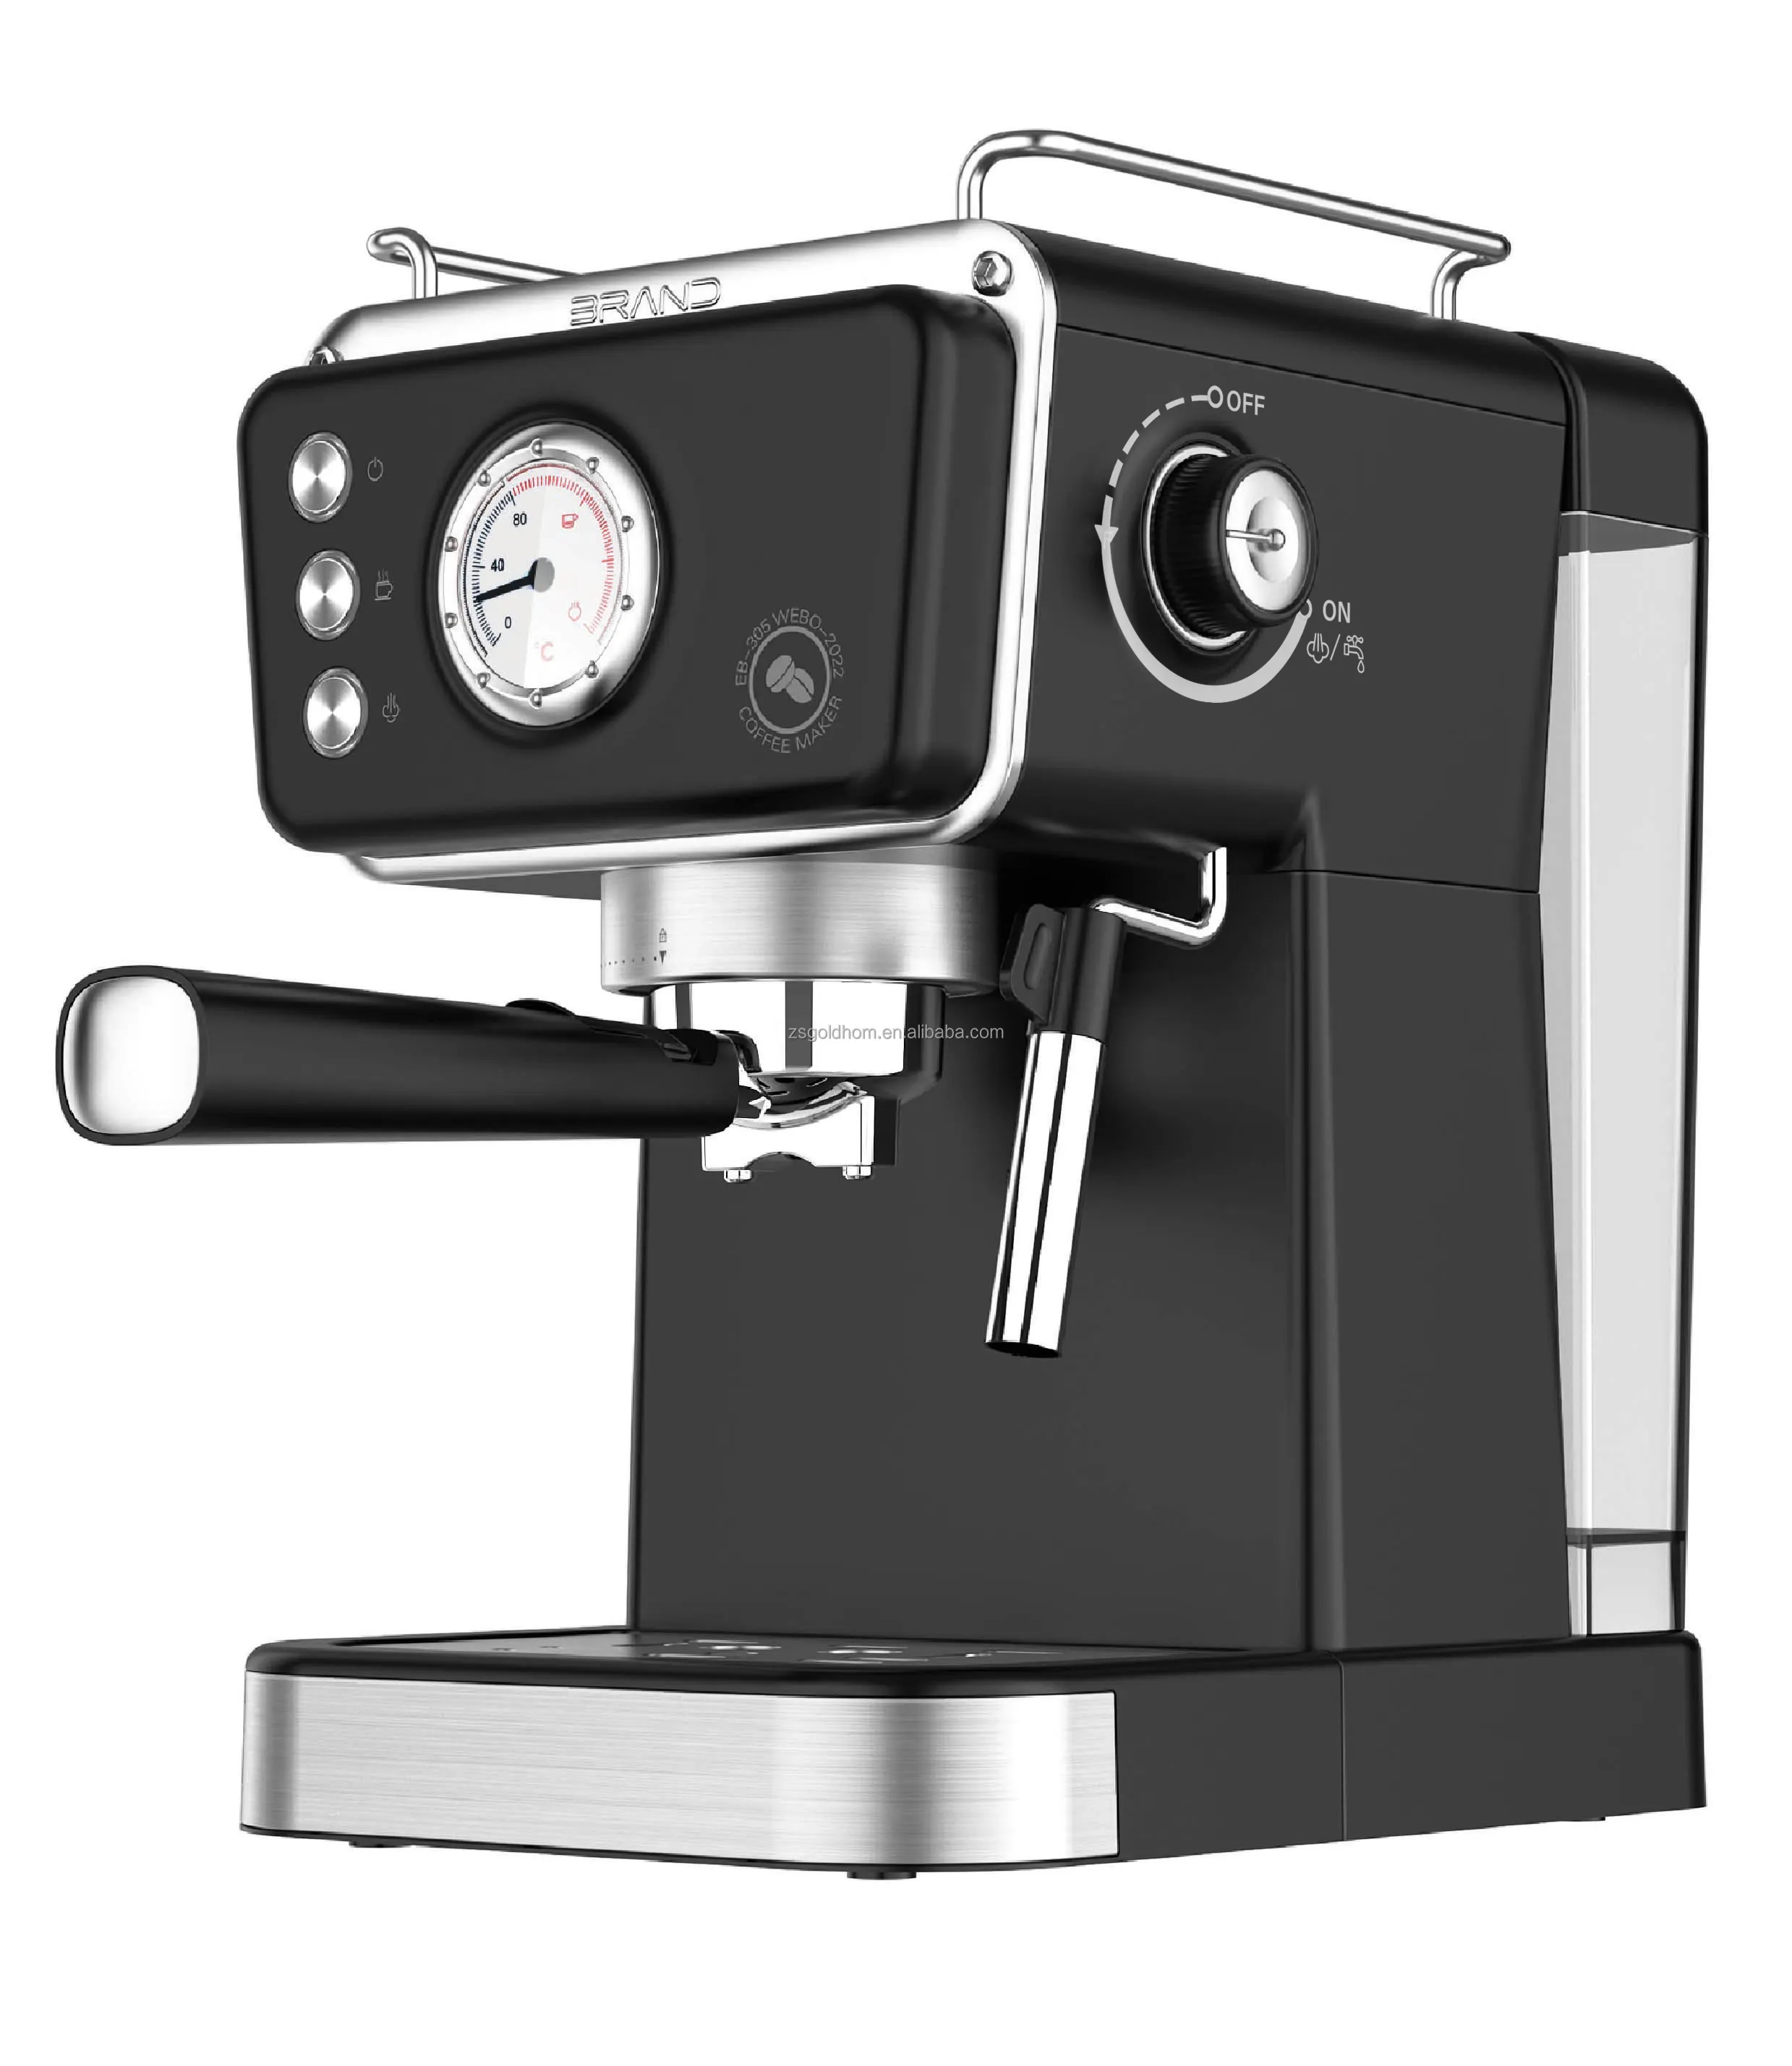 professional Cafetera cappuccino maker semi-automatic instant commercial espresso coffee maker machine